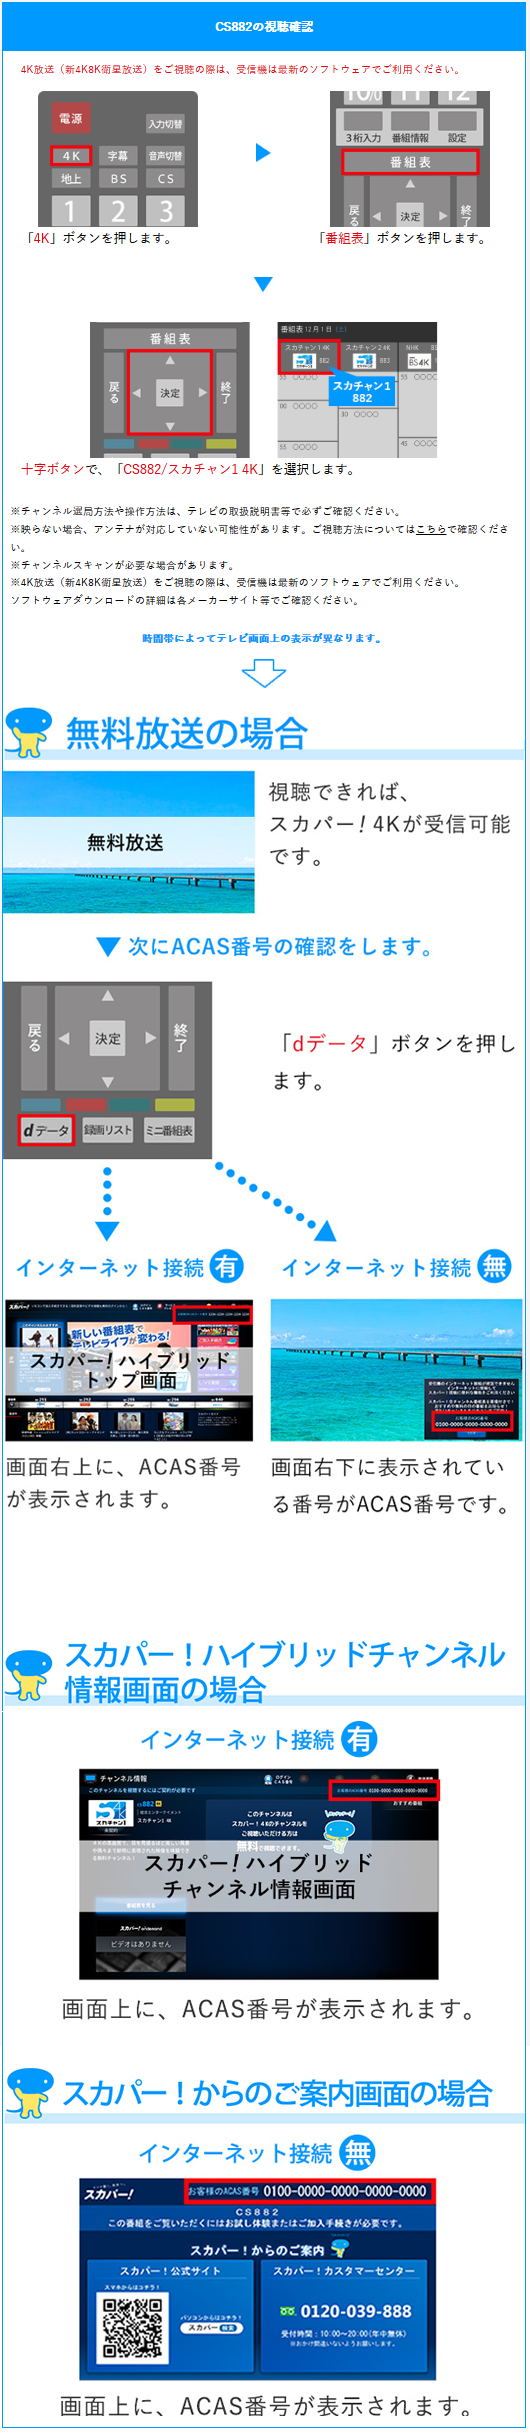 リモコンのCSボタン、番組表ボタンを順に押し、テレビに番組表画面を表示させる。方向ボタンでチャンネル101のスカパー！プロモ101を選択し、画面の右上に表示されている番号がB-CAS番号です。